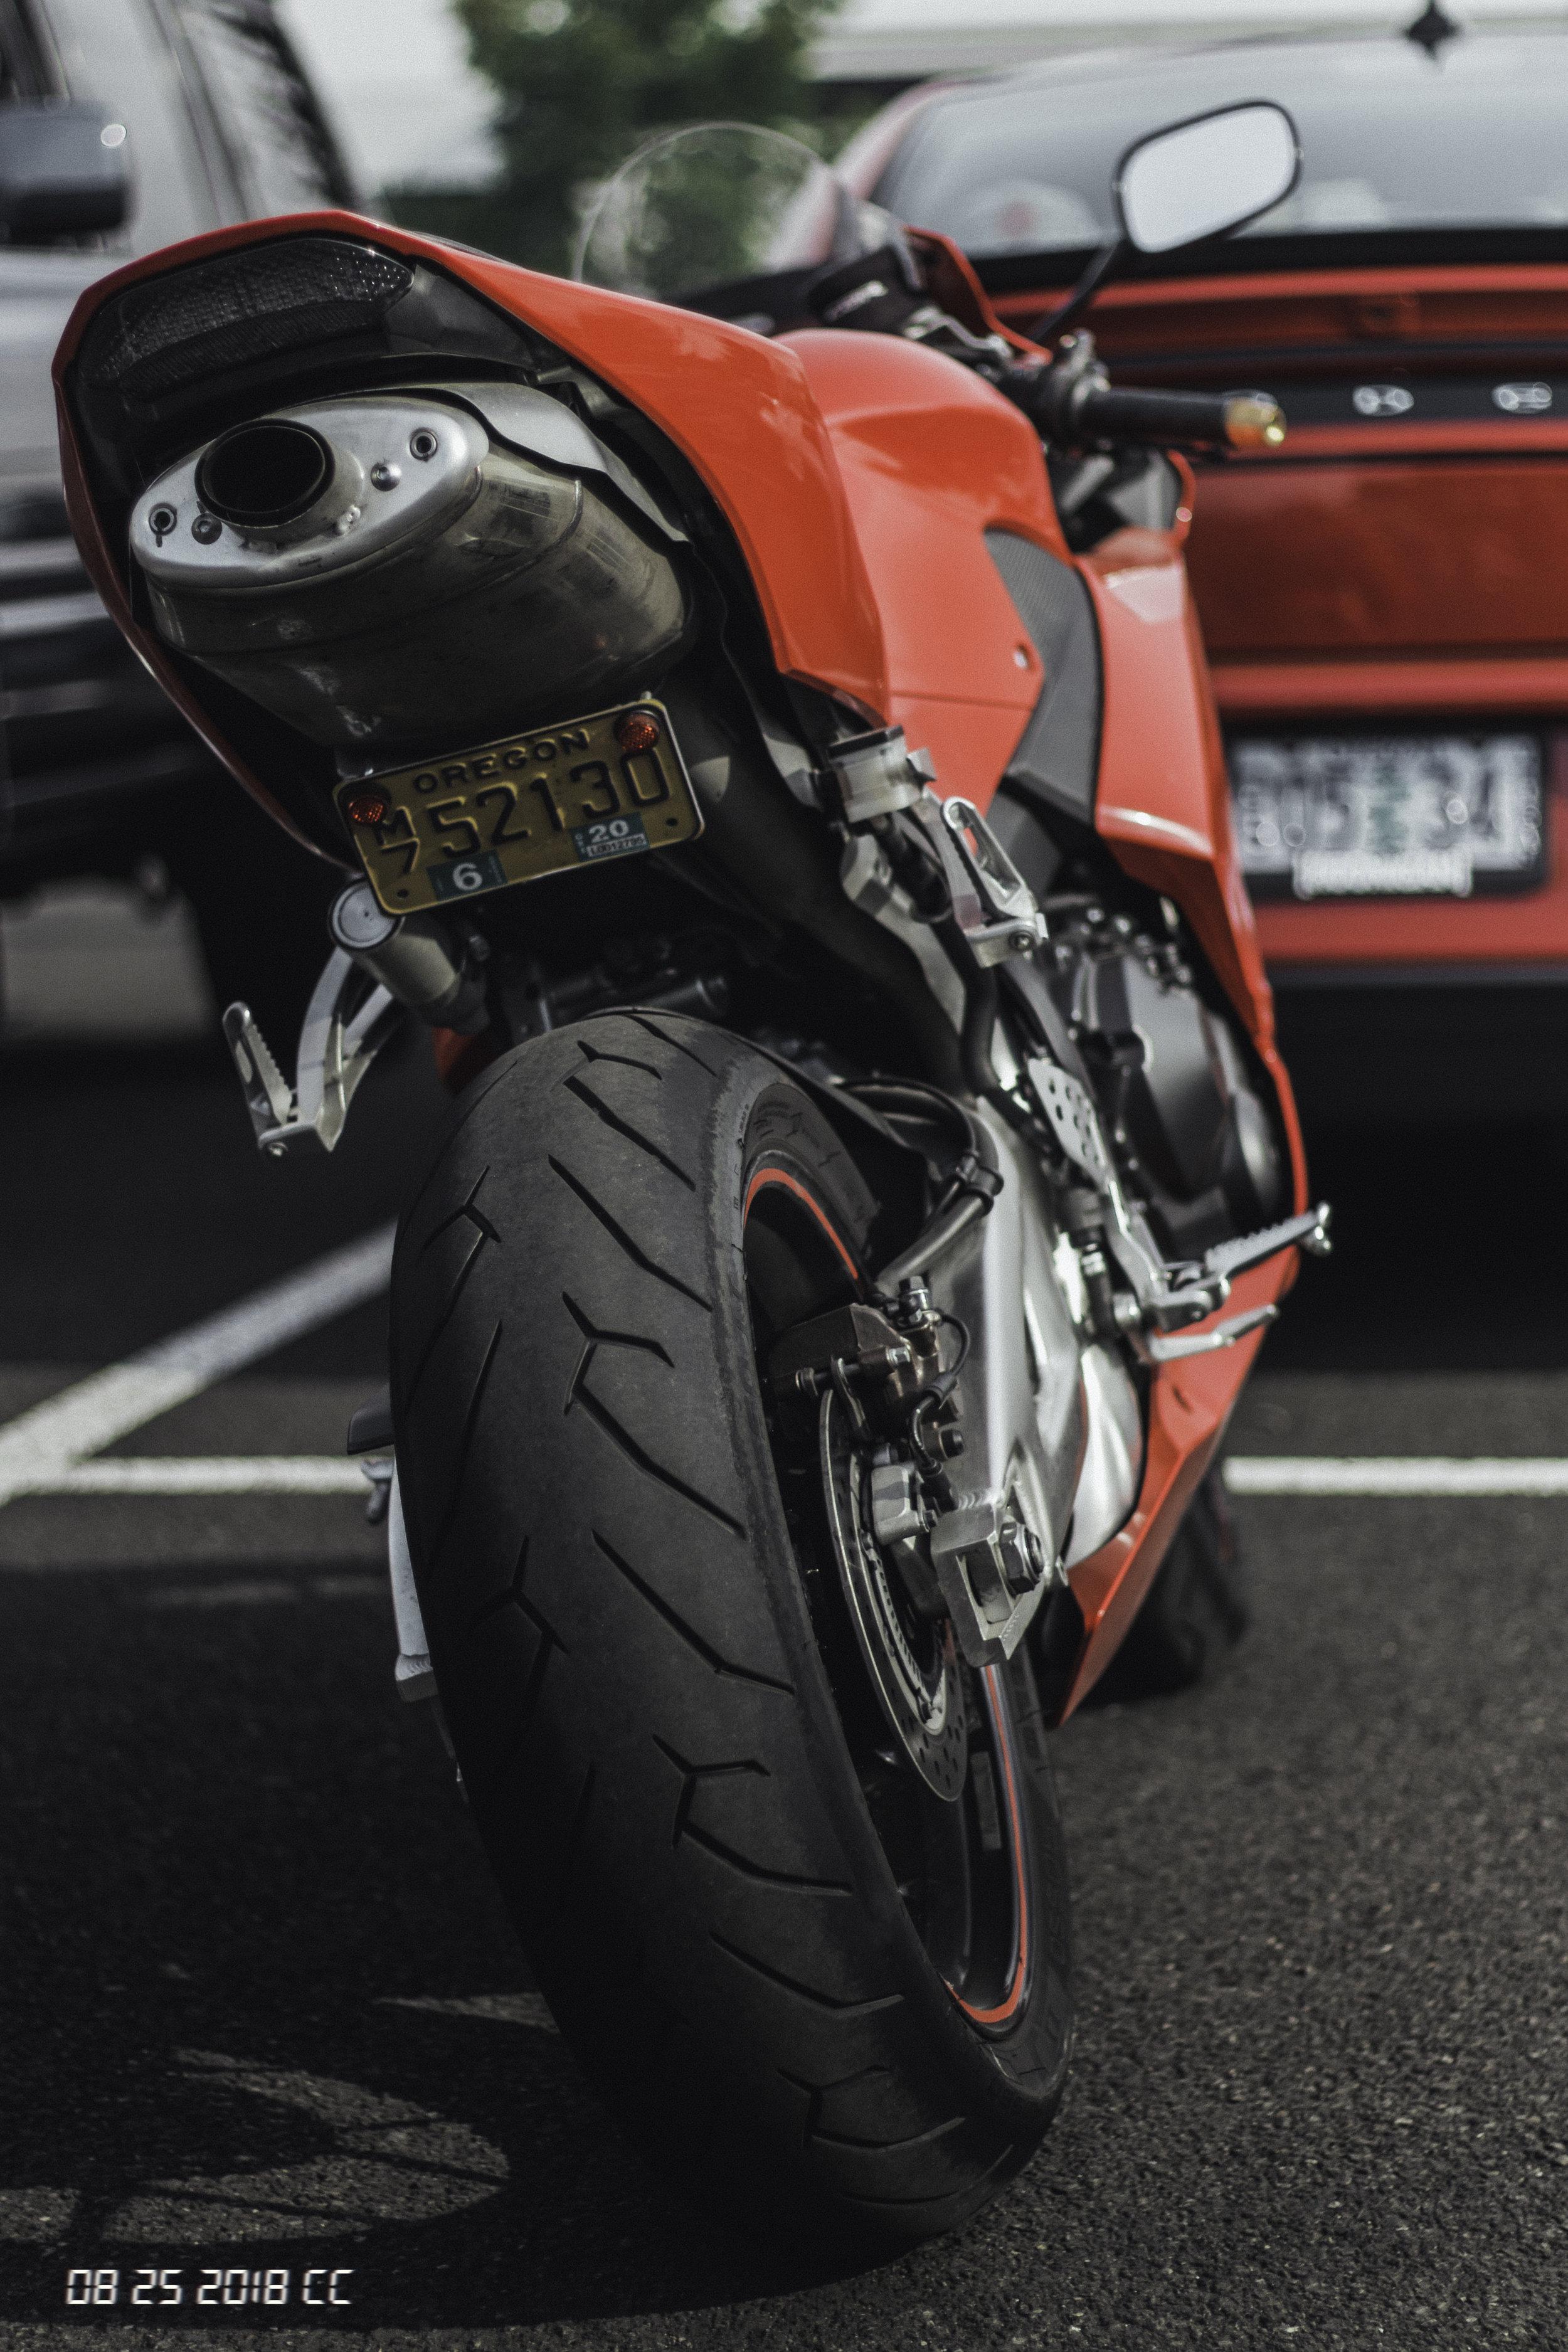 Ducati_8.25.jpg